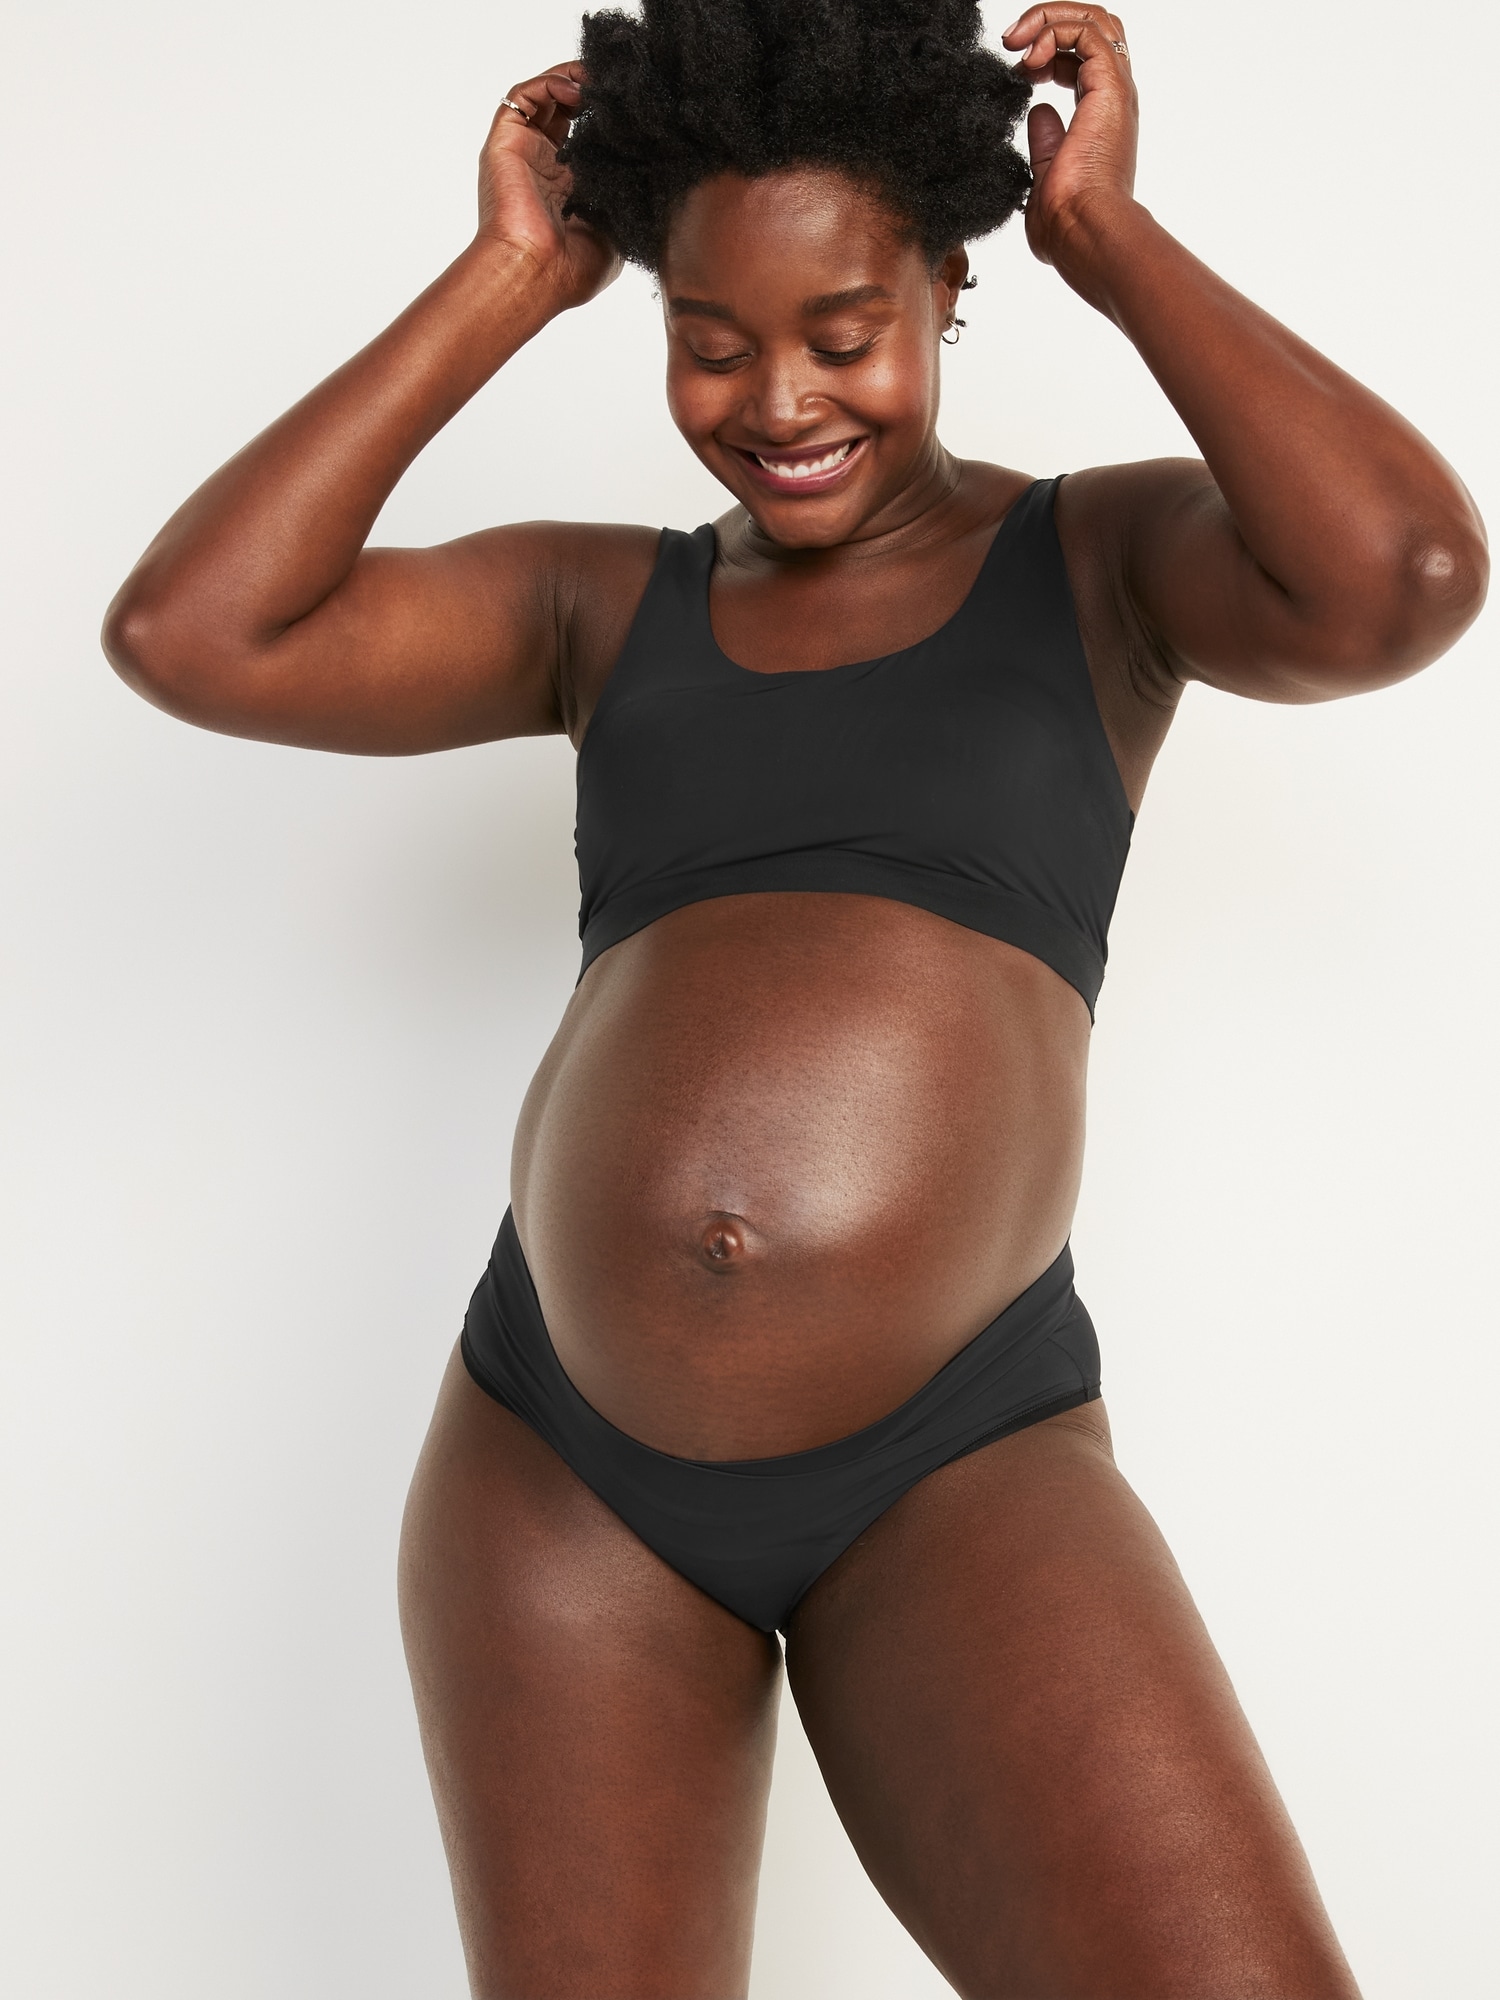 Buy Under the Belly Maternity Underwear  Pregnancy Bikini Underwear - 5  Pack Online at desertcartSeychelles